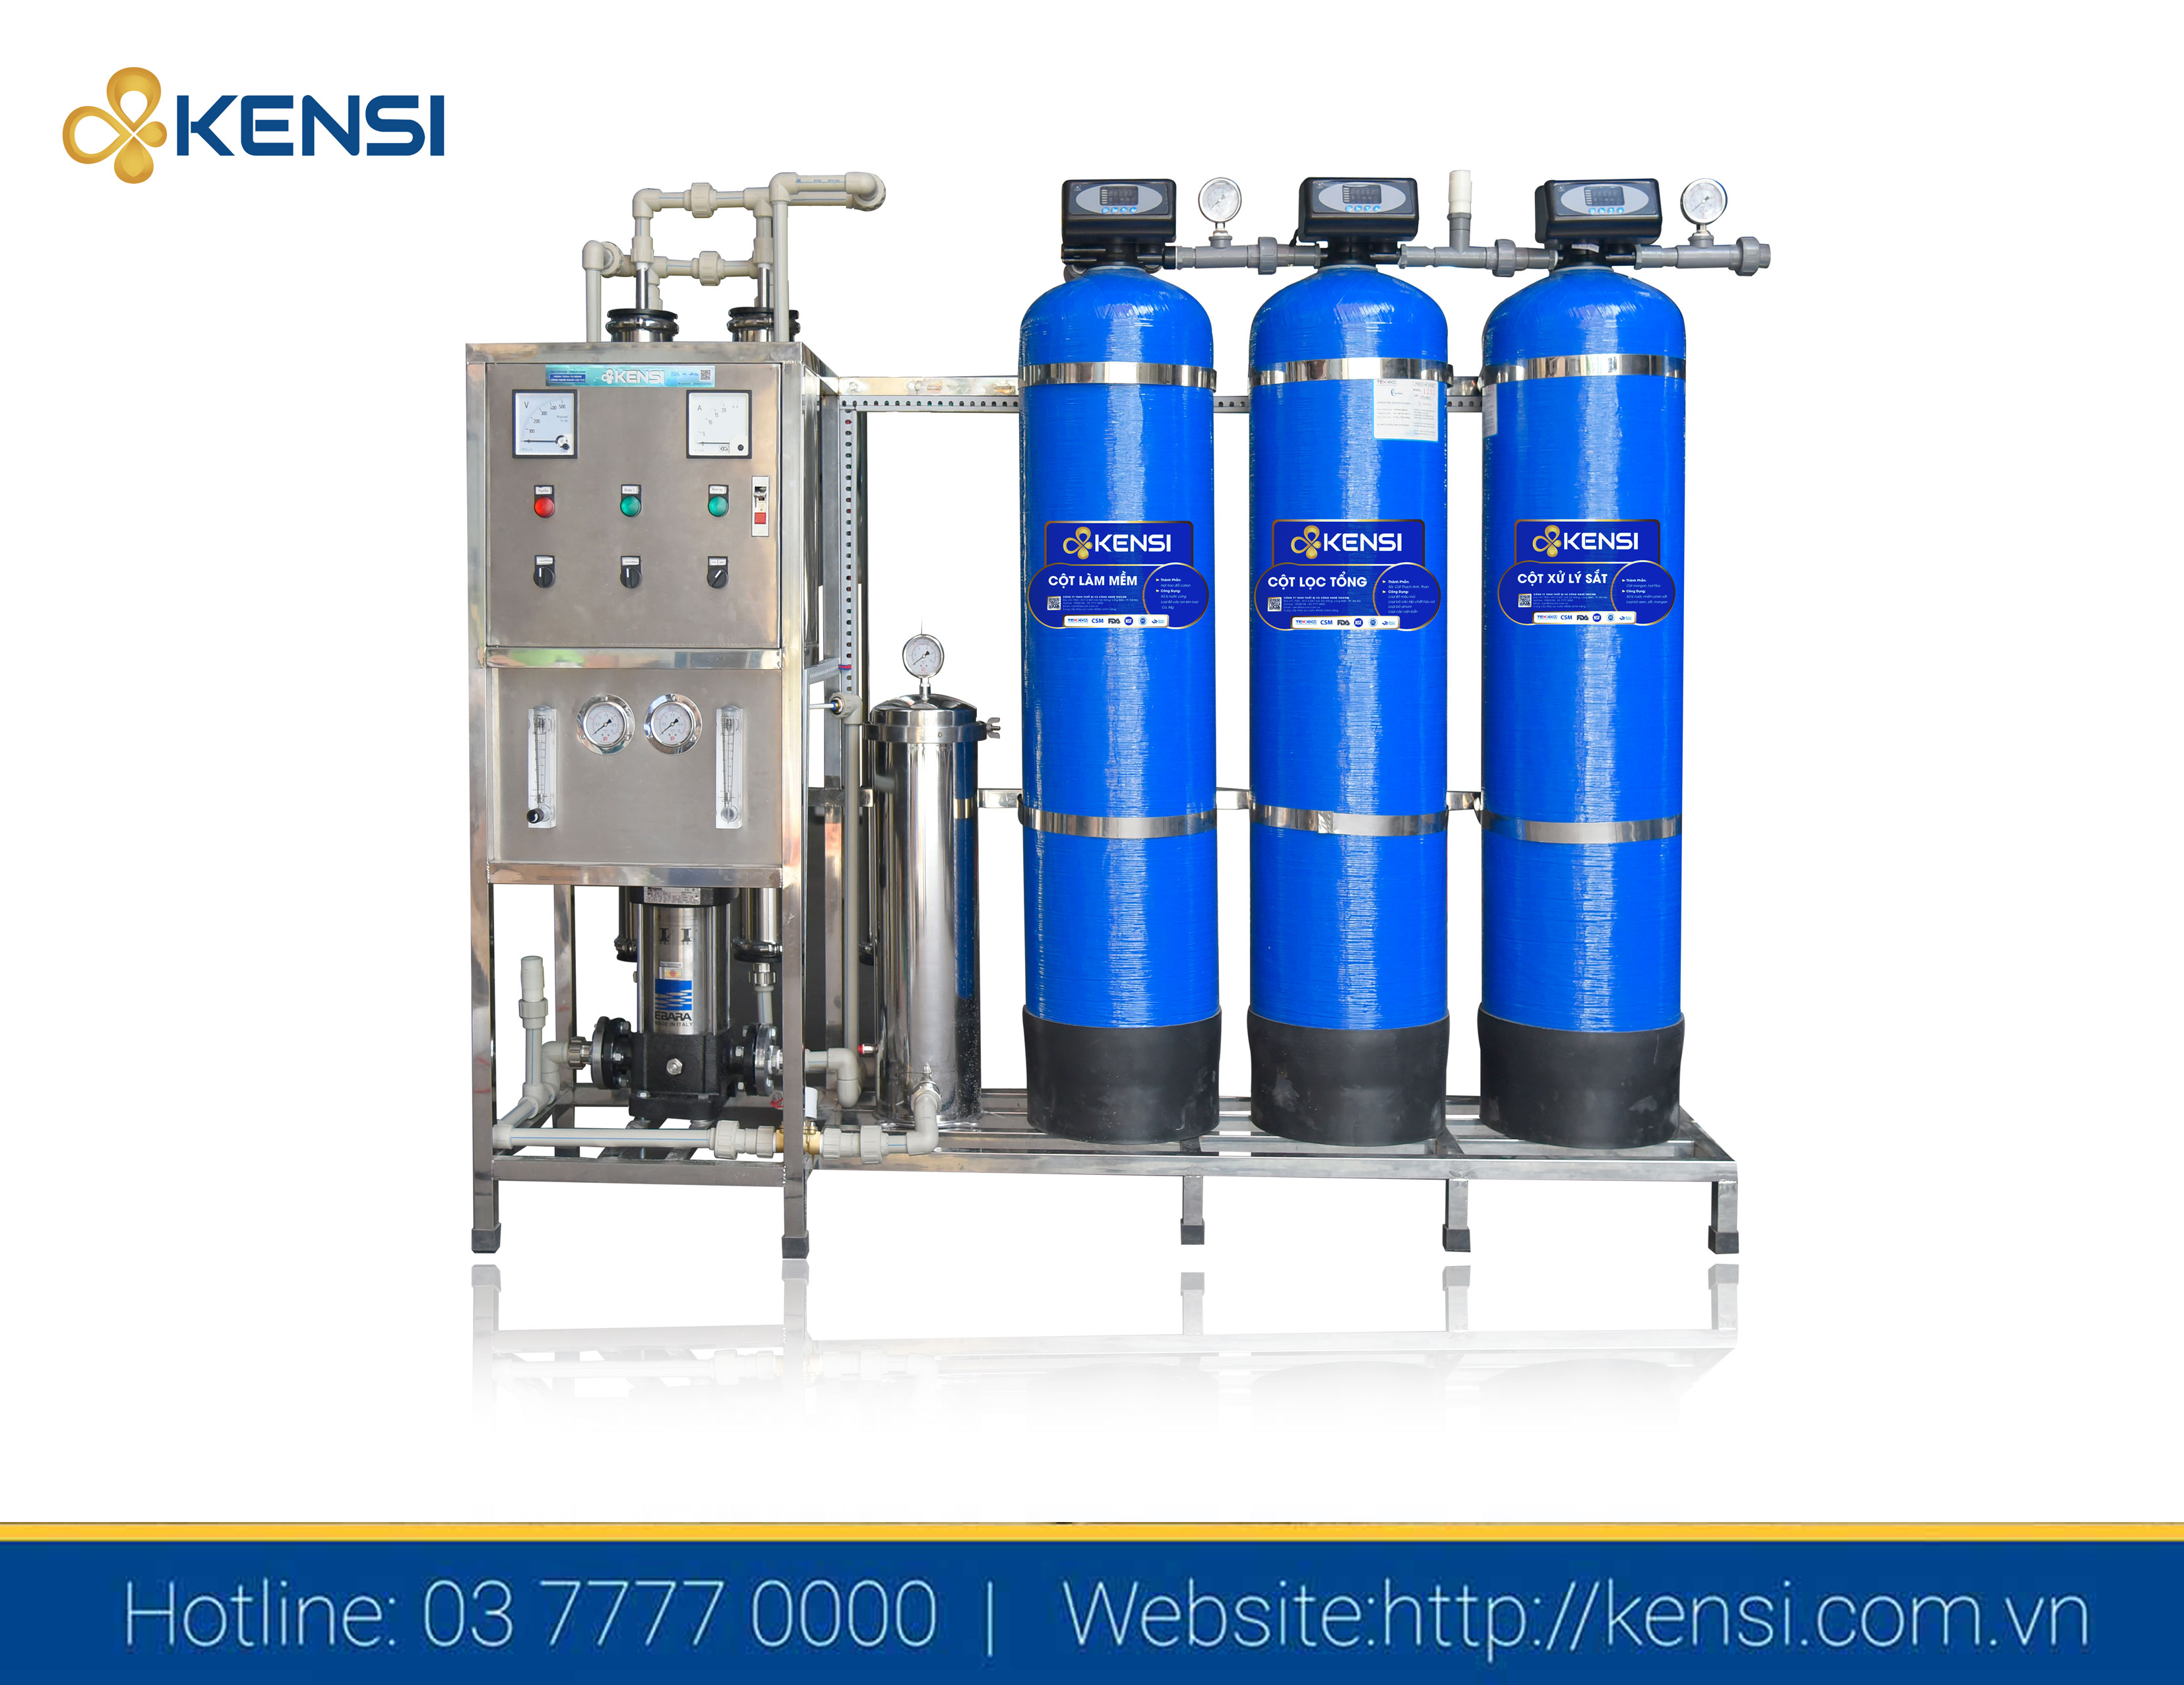 EBICO cung cấp đa dạng các giải pháp xử lý nước